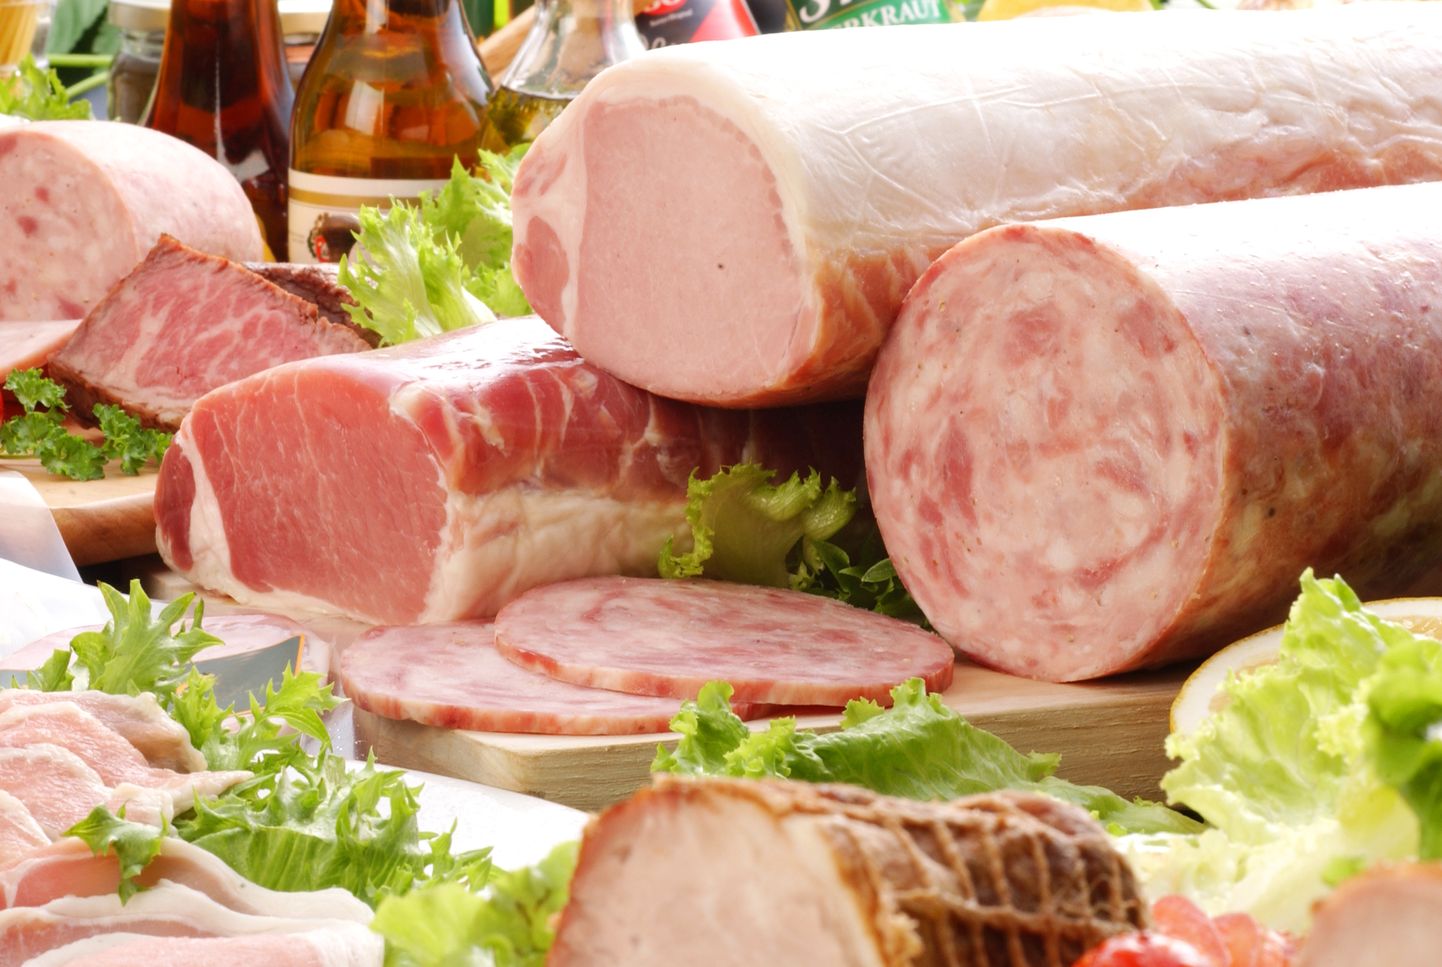 Punane ja töödeldud liha suurendavad varajase surma riski.